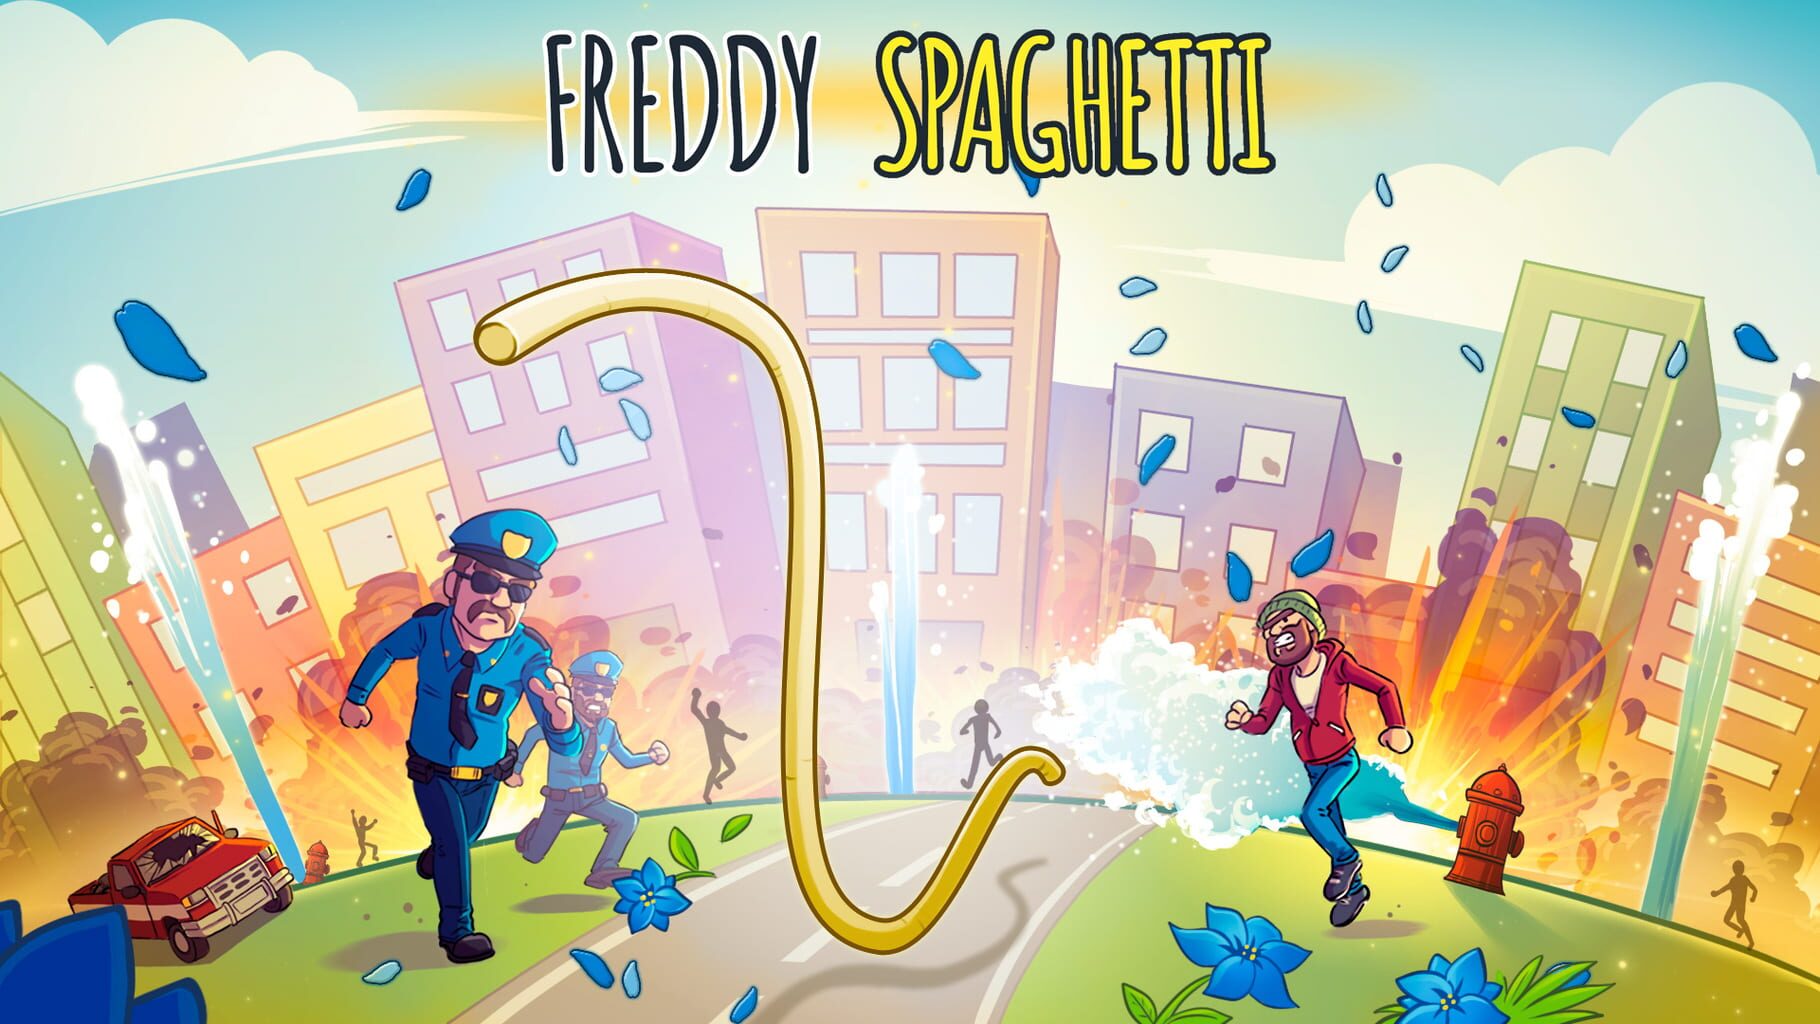 Arte - Freddy Spaghetti